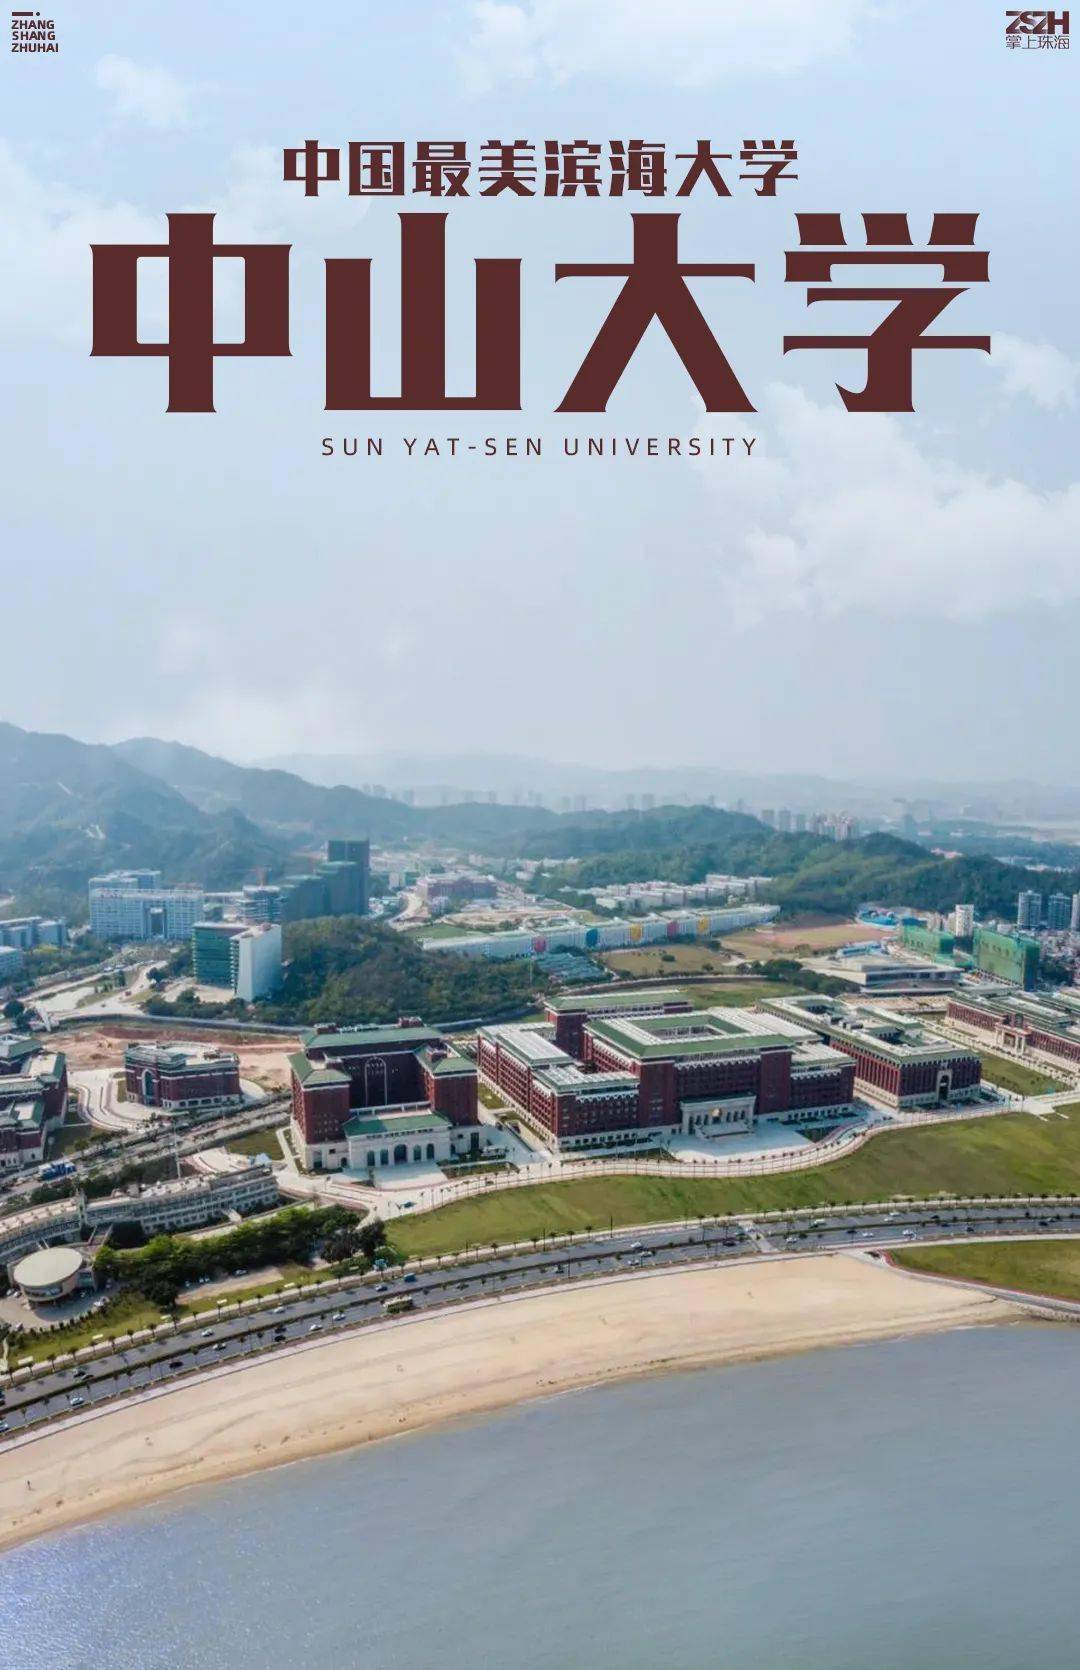 (国家优质工程)评选结果揭晓 中山大学珠海校区海琴2号楼 荣获中国